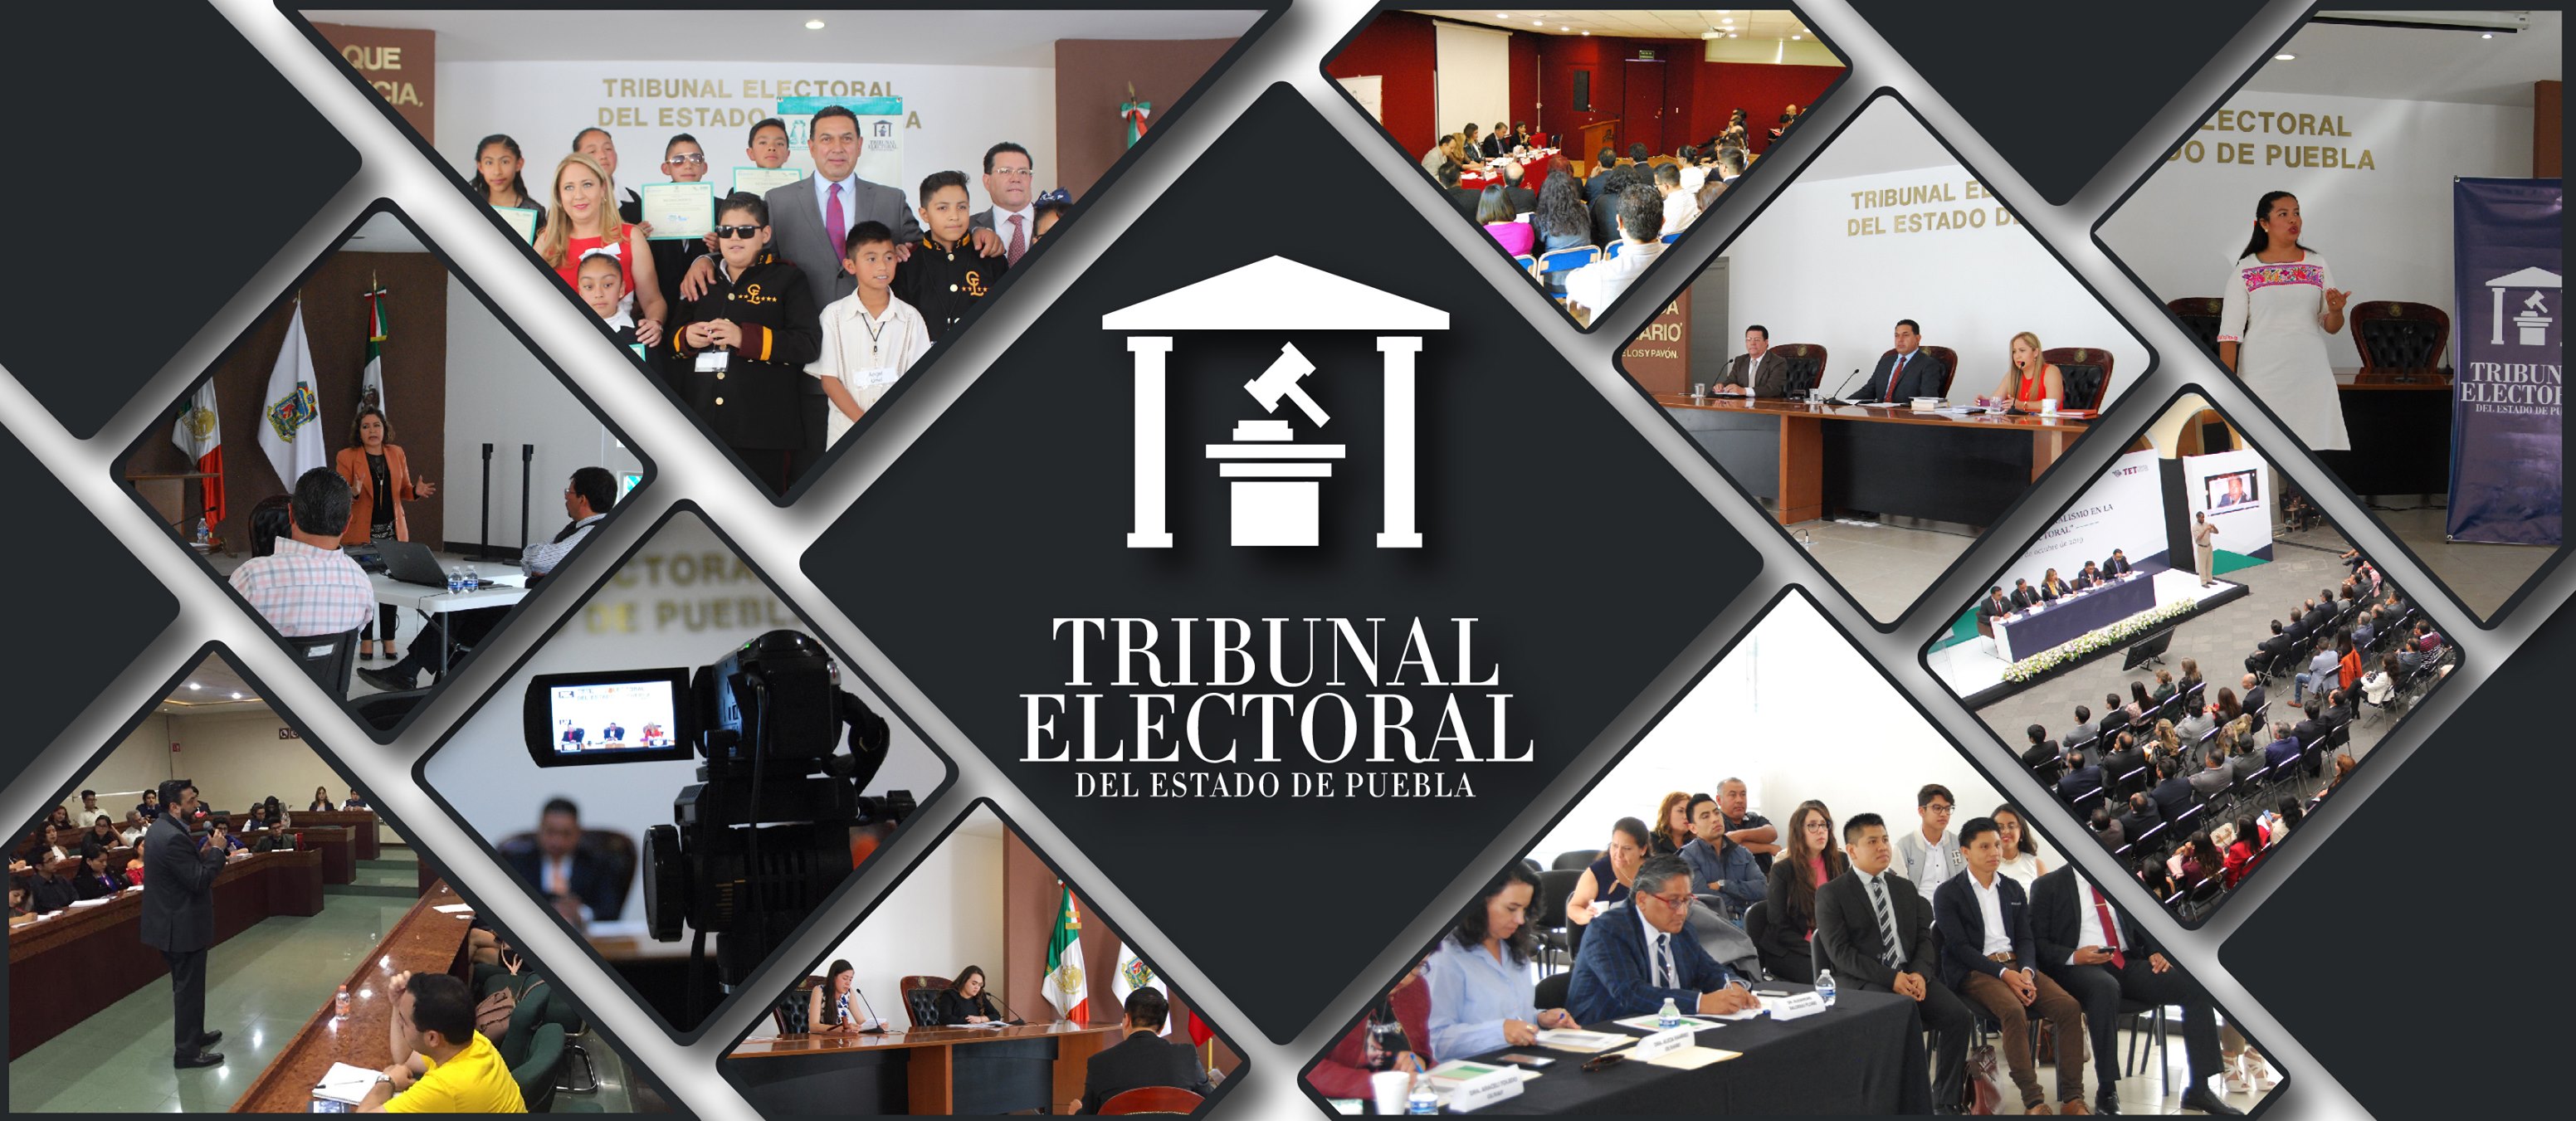 Acuerdo General del Tribunal Electoral del Estado de Puebla para establecer medidas preventivas ante el Covid-19